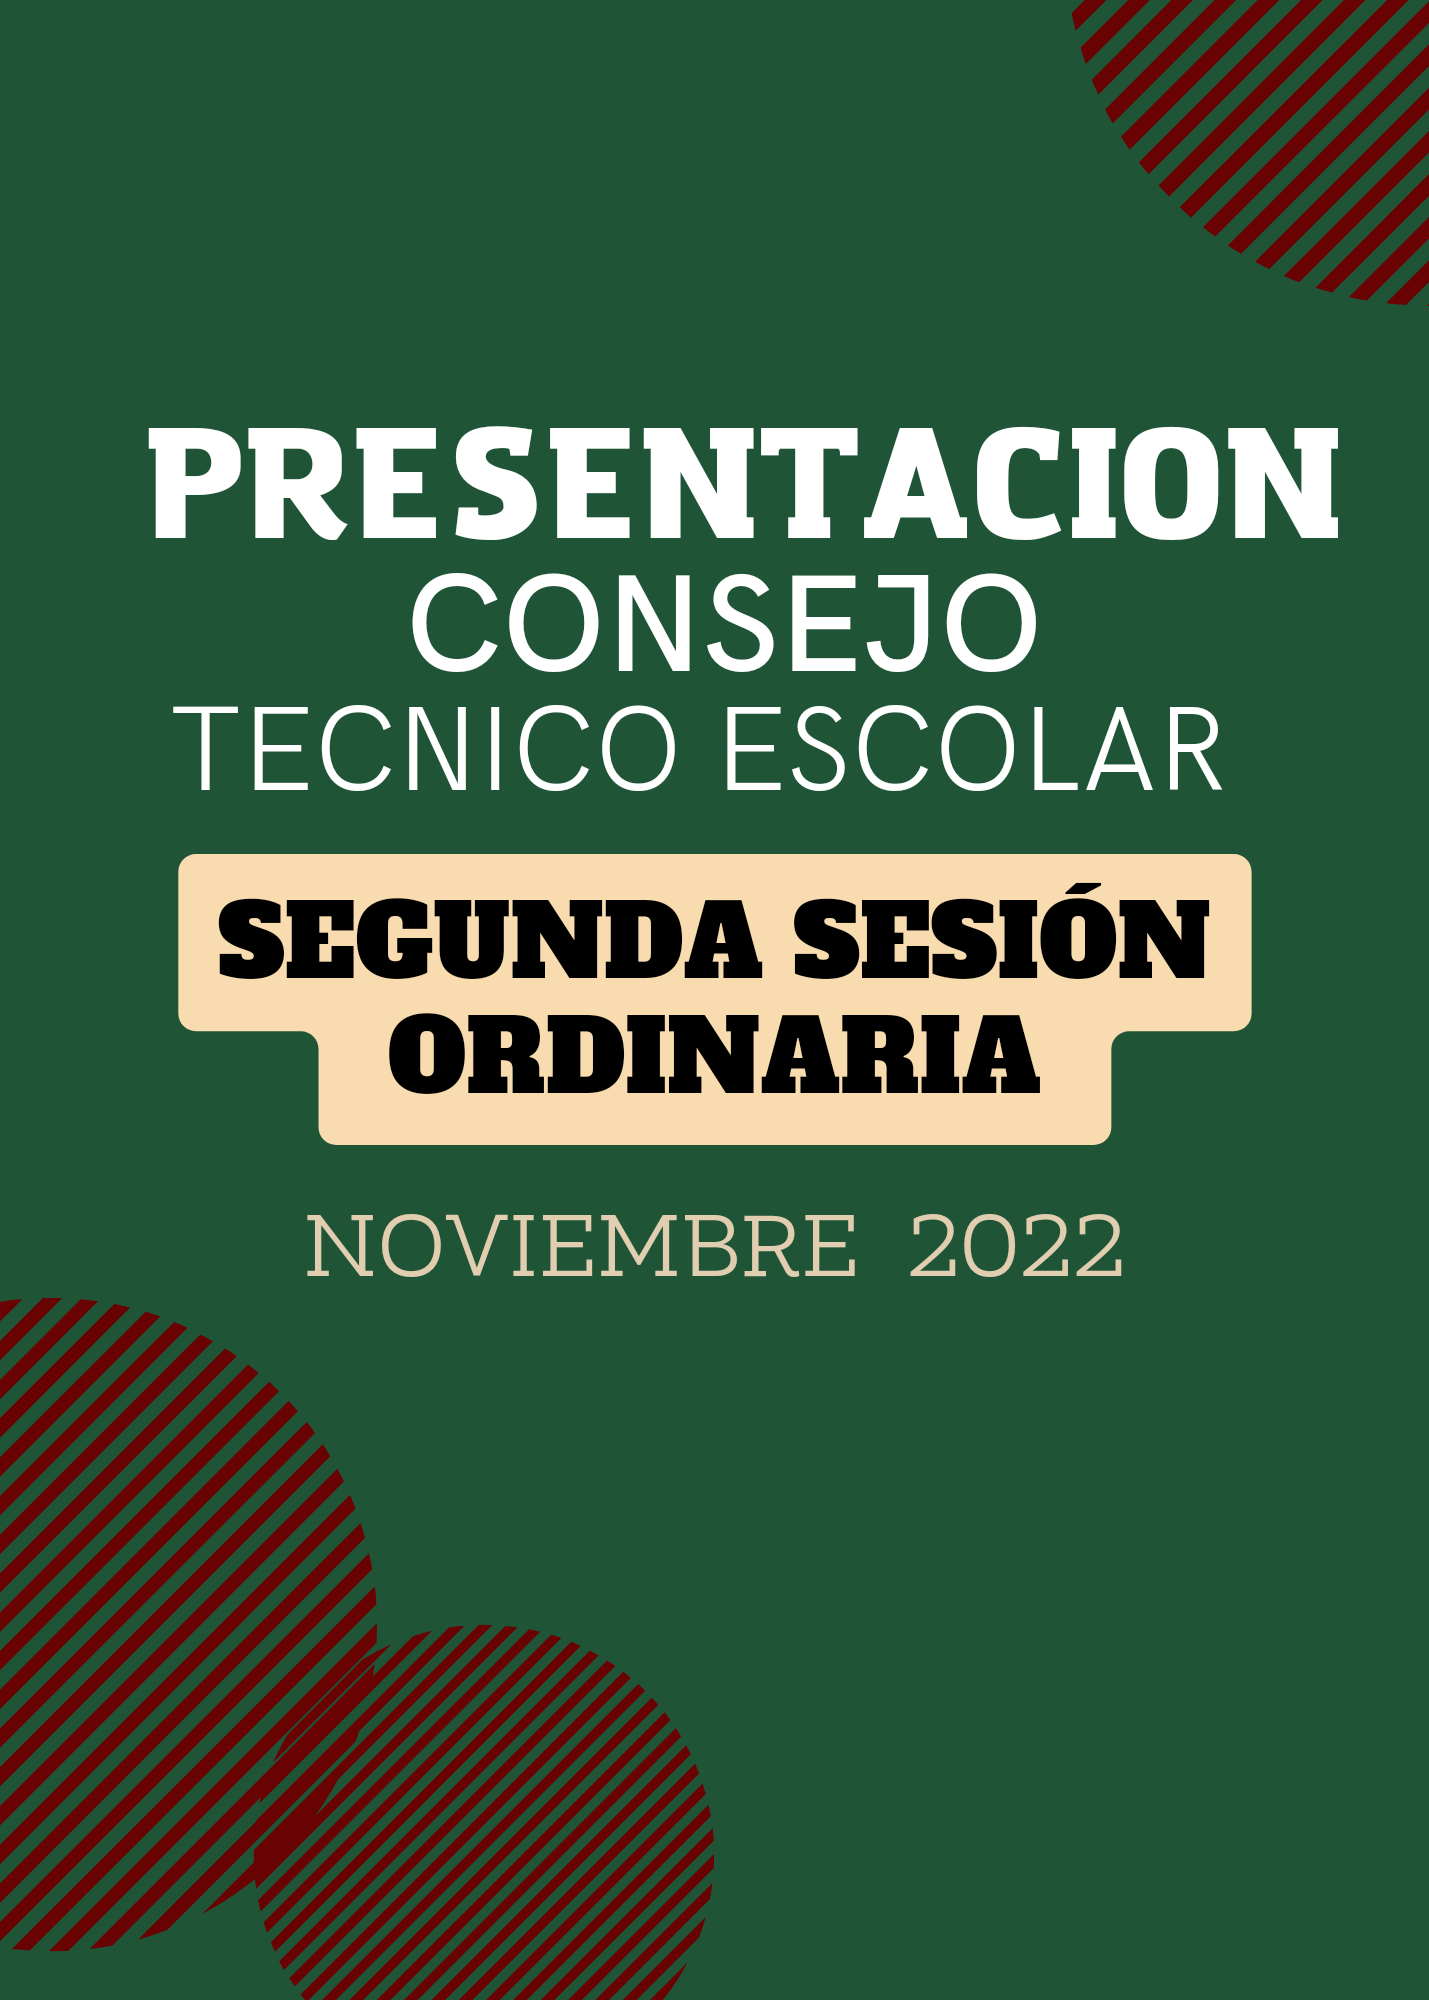 PRESENTACION SEGUNDA SESION ORDINARIA DEL CONSEJO TECNICO ESCOLAR NOVIEMBRE  2022 | MATERIAL EDUCATIVO PRIMARIA